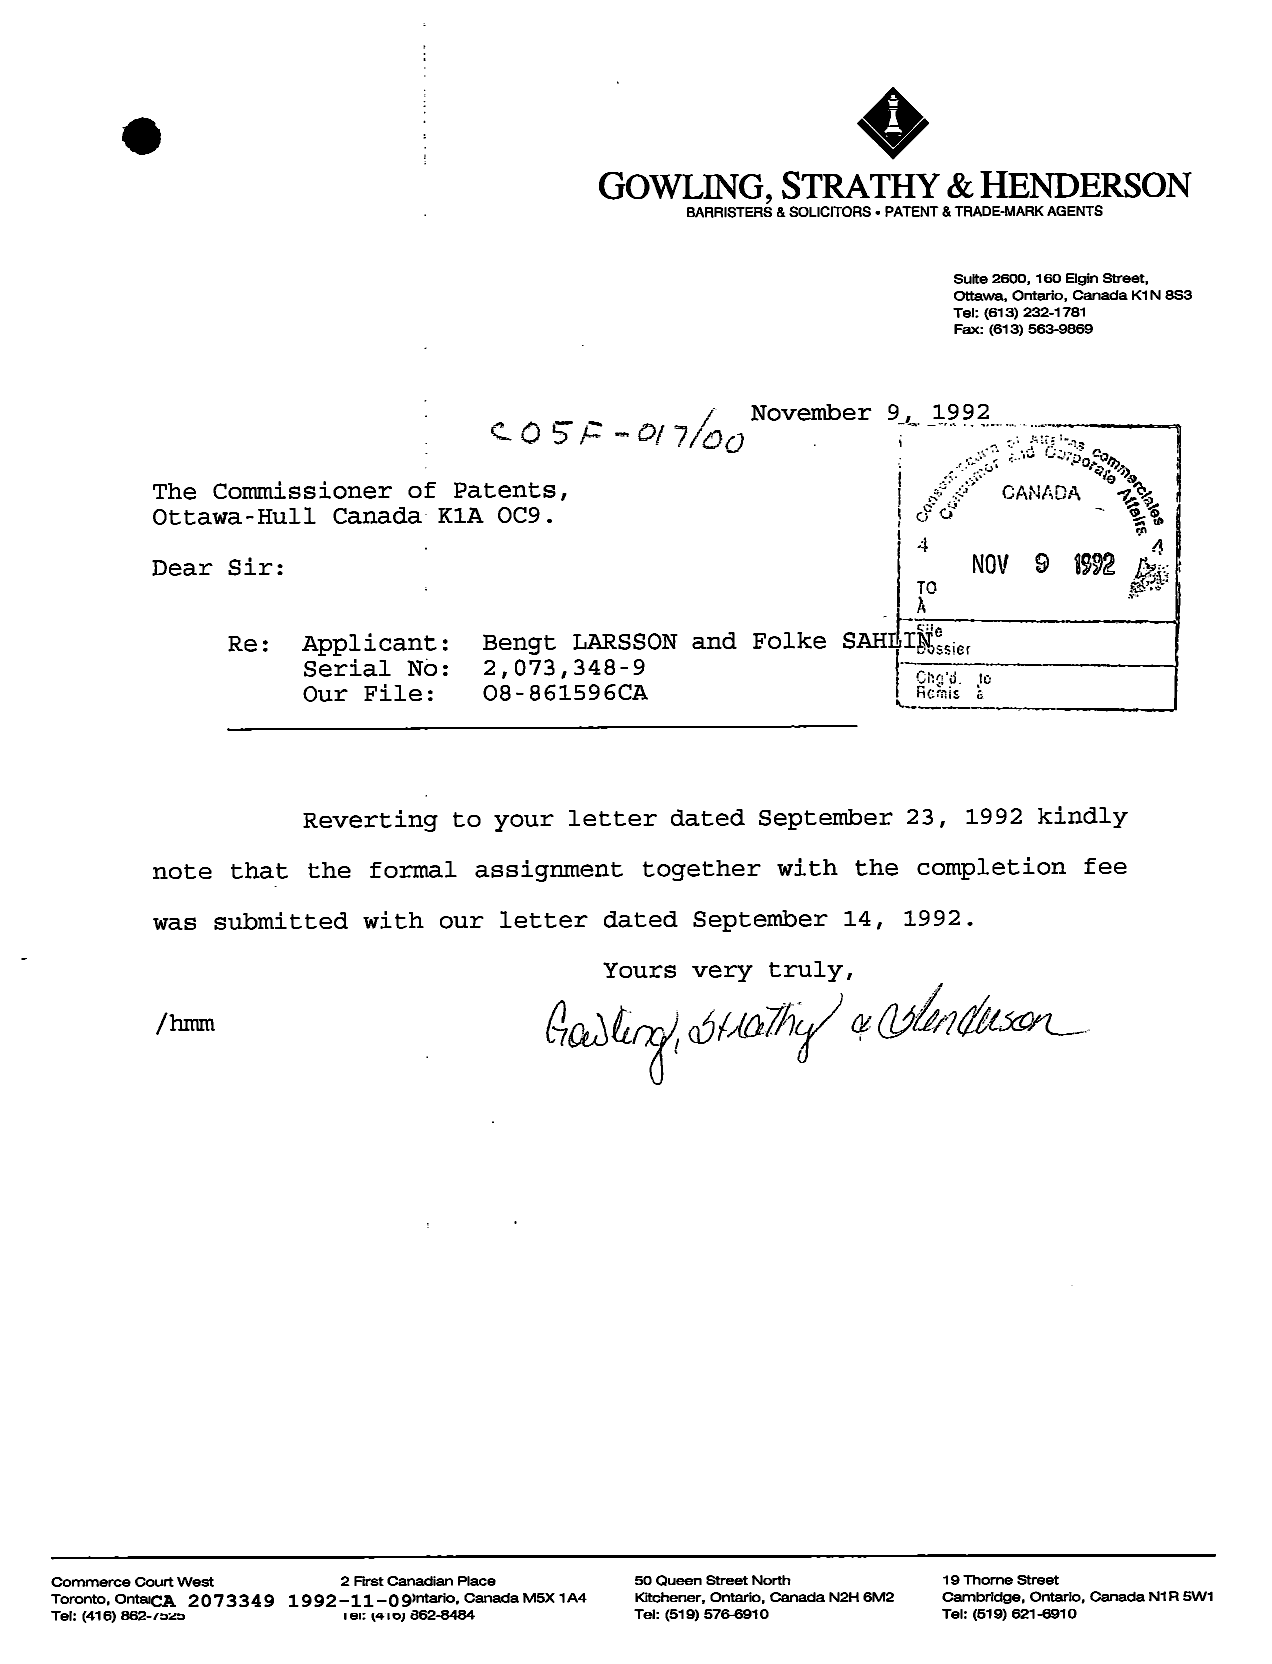 Document de brevet canadien 2073349. Correspondance reliée au PCT 19921109. Image 1 de 1